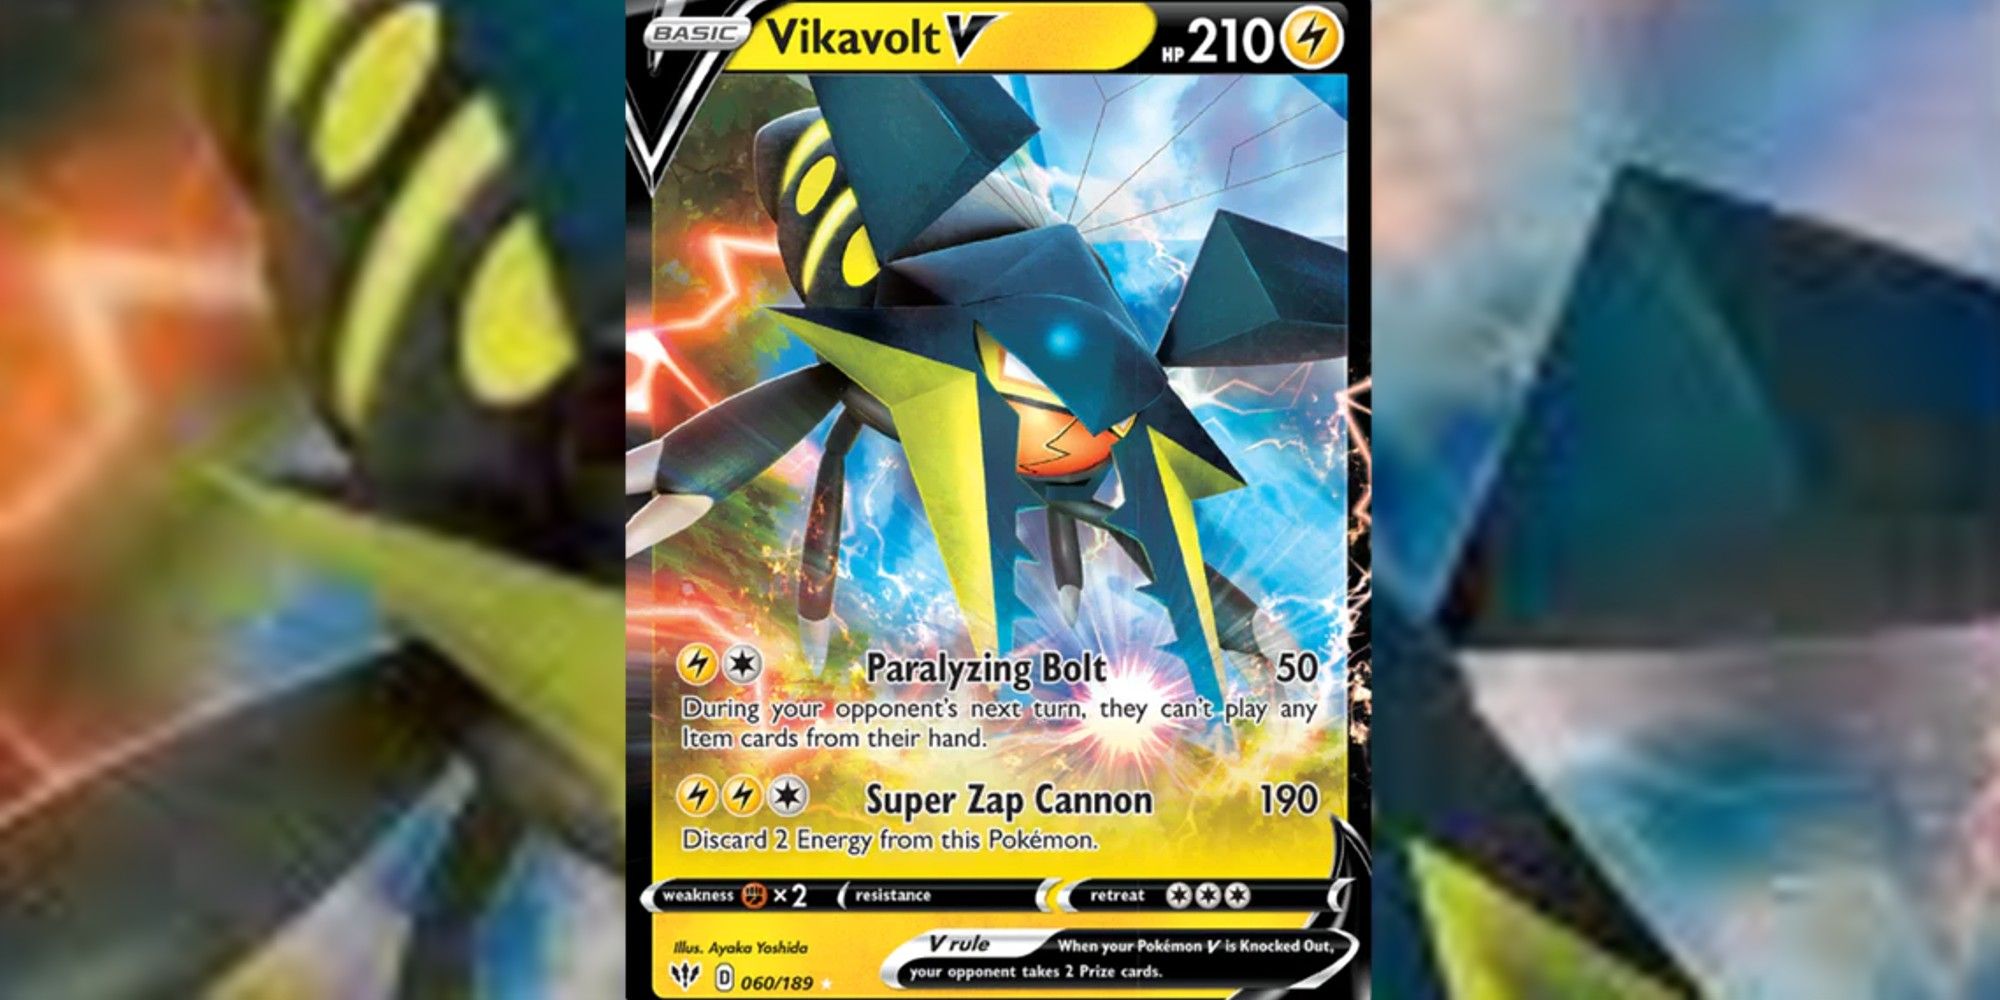 Vikavolt V card with blurred background